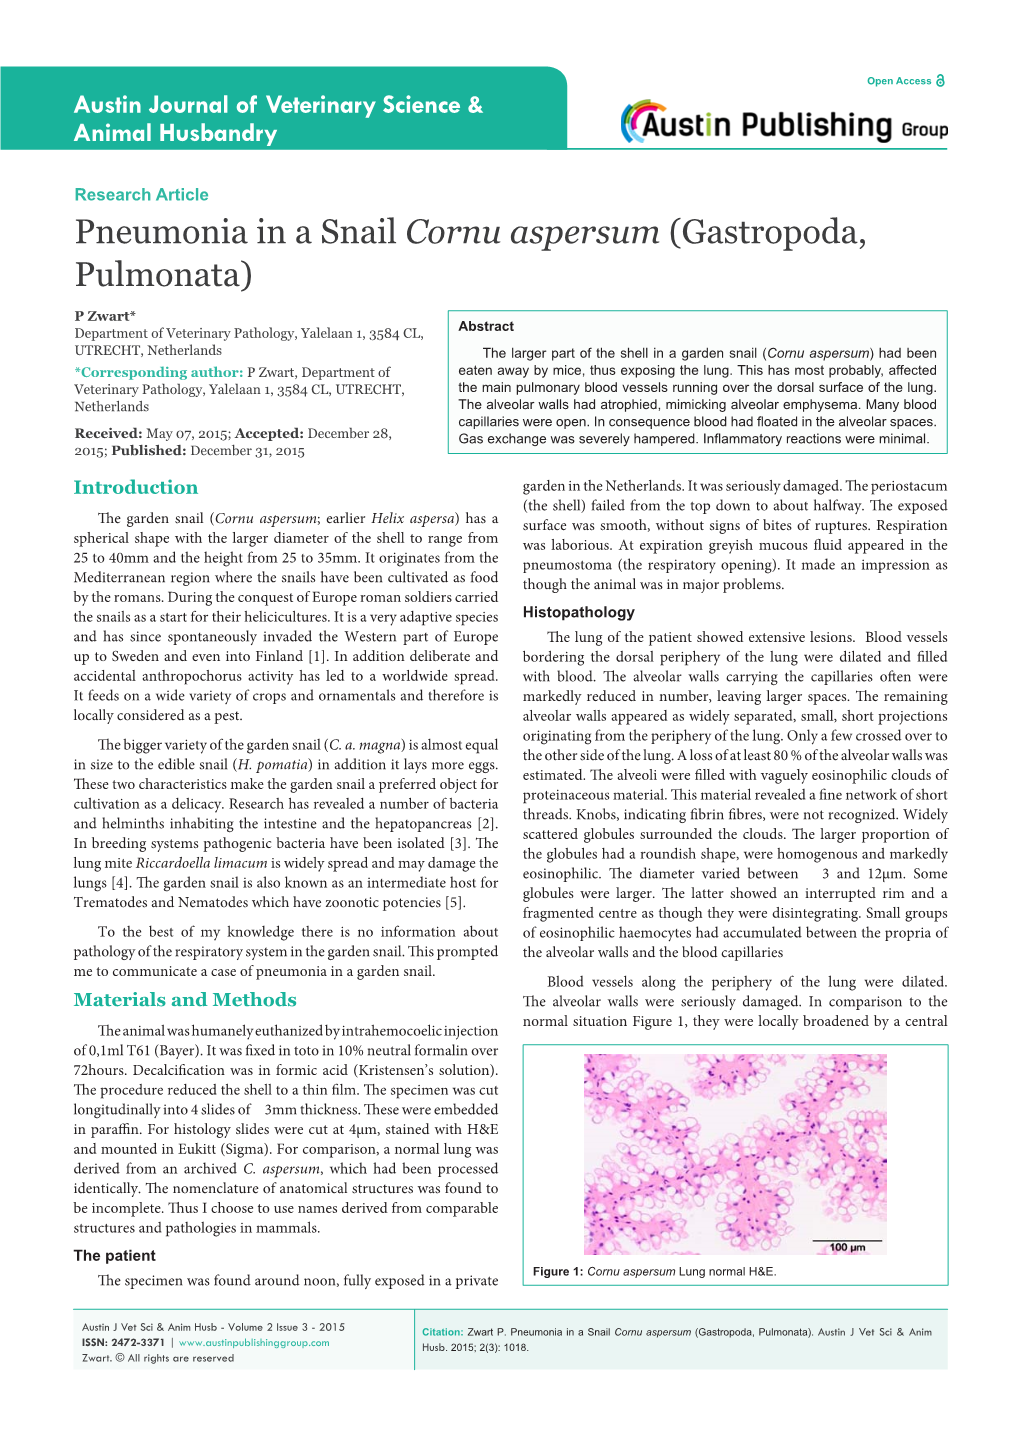 Pneumonia in a Snail Cornu Aspersum (Gastropoda, Pulmonata)